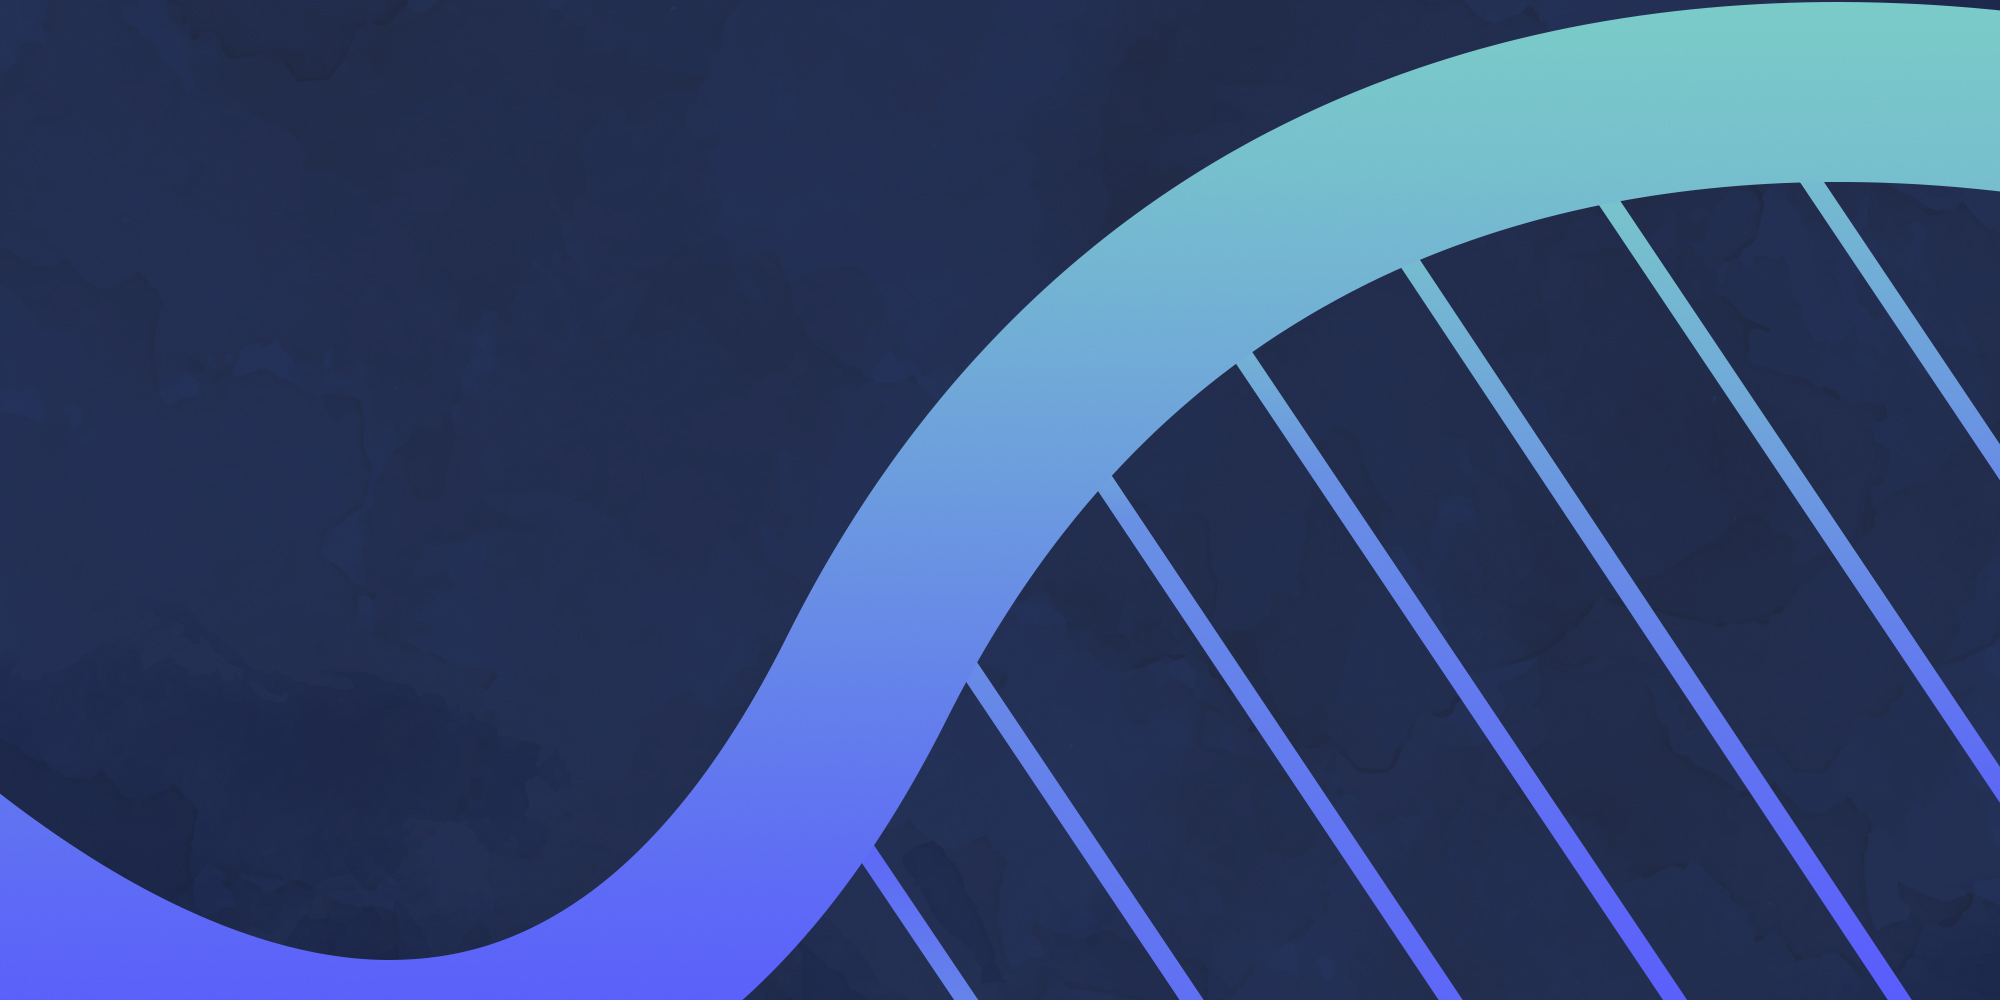 Illustration of DNA over dark blue background